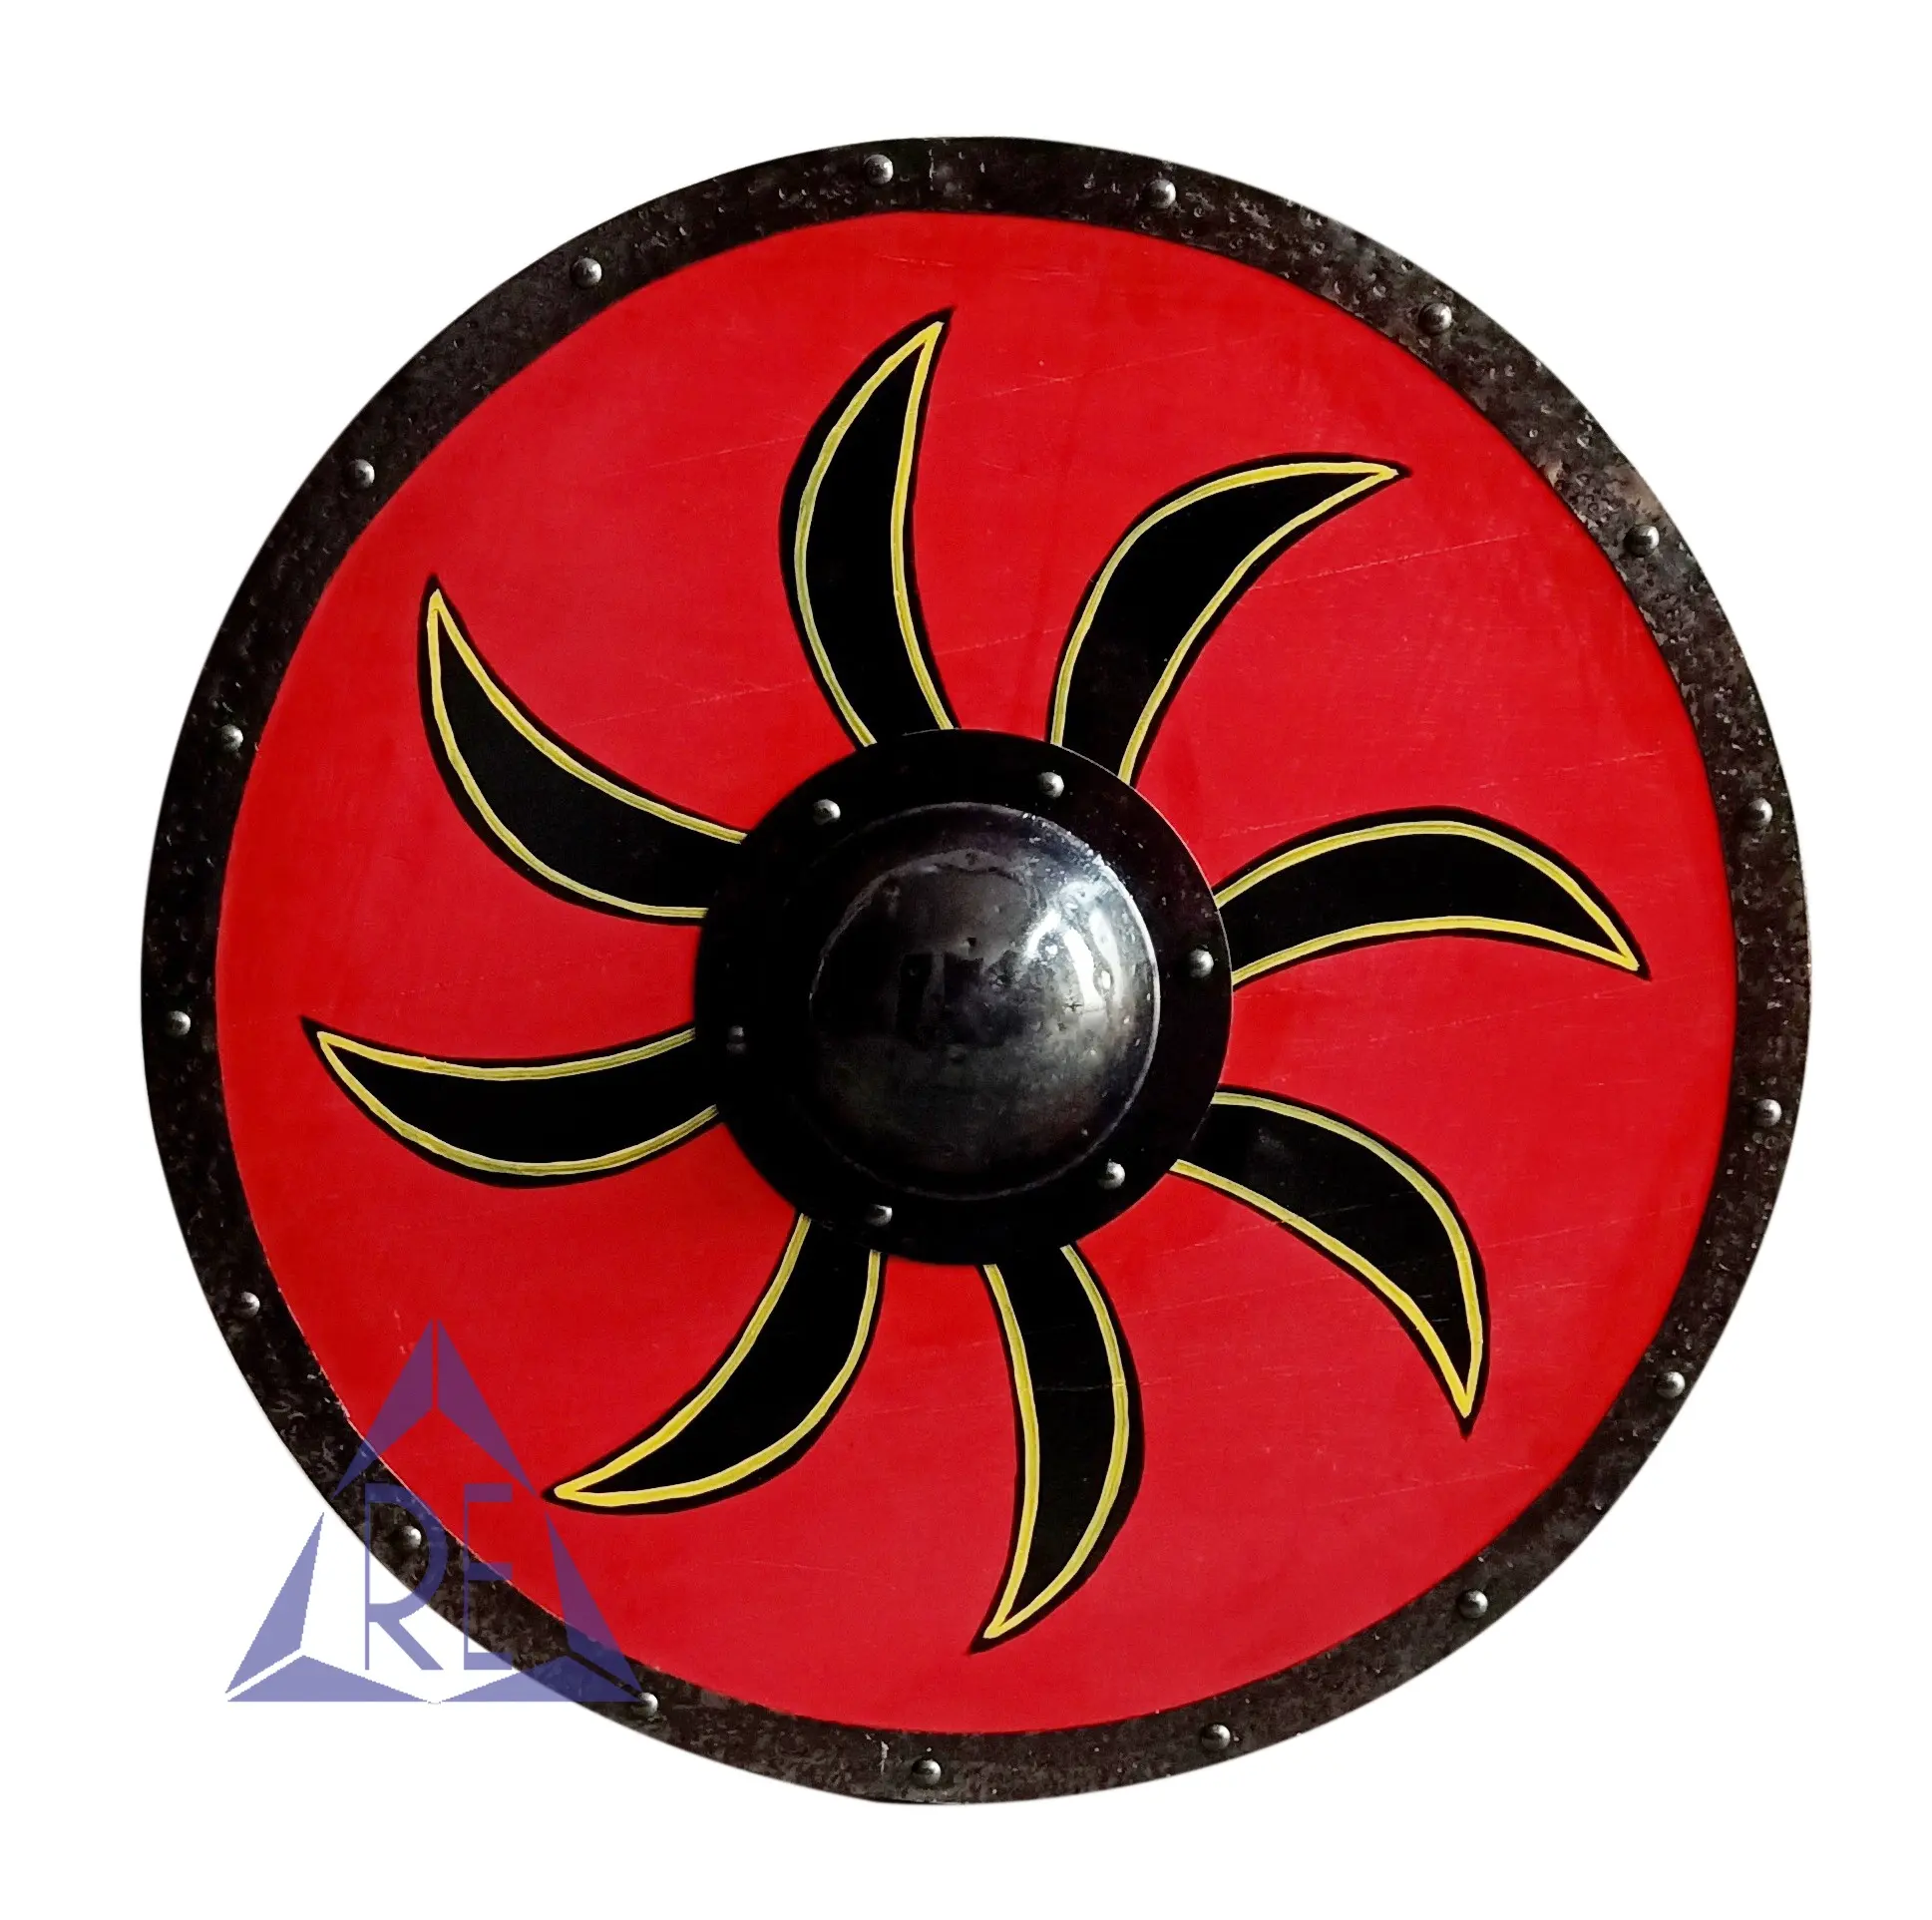 Mittelalter licher runder Holz schild für Spiele Historischer Kampf raum Dekoration Buckler Viking Battle Shield Armor Templer Shield